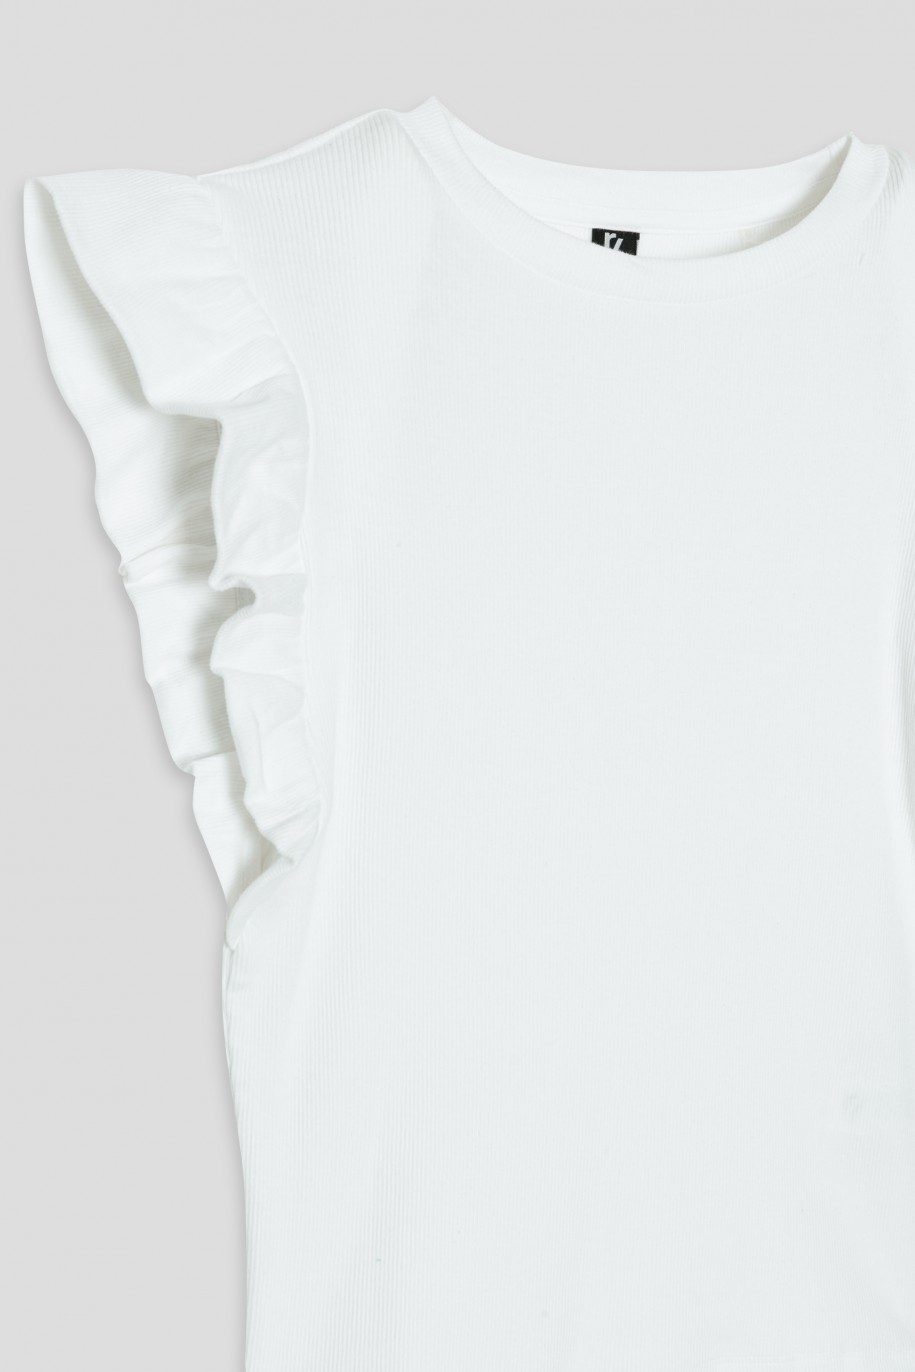 Biała bluzka z falbankami przy rękawach - 36195